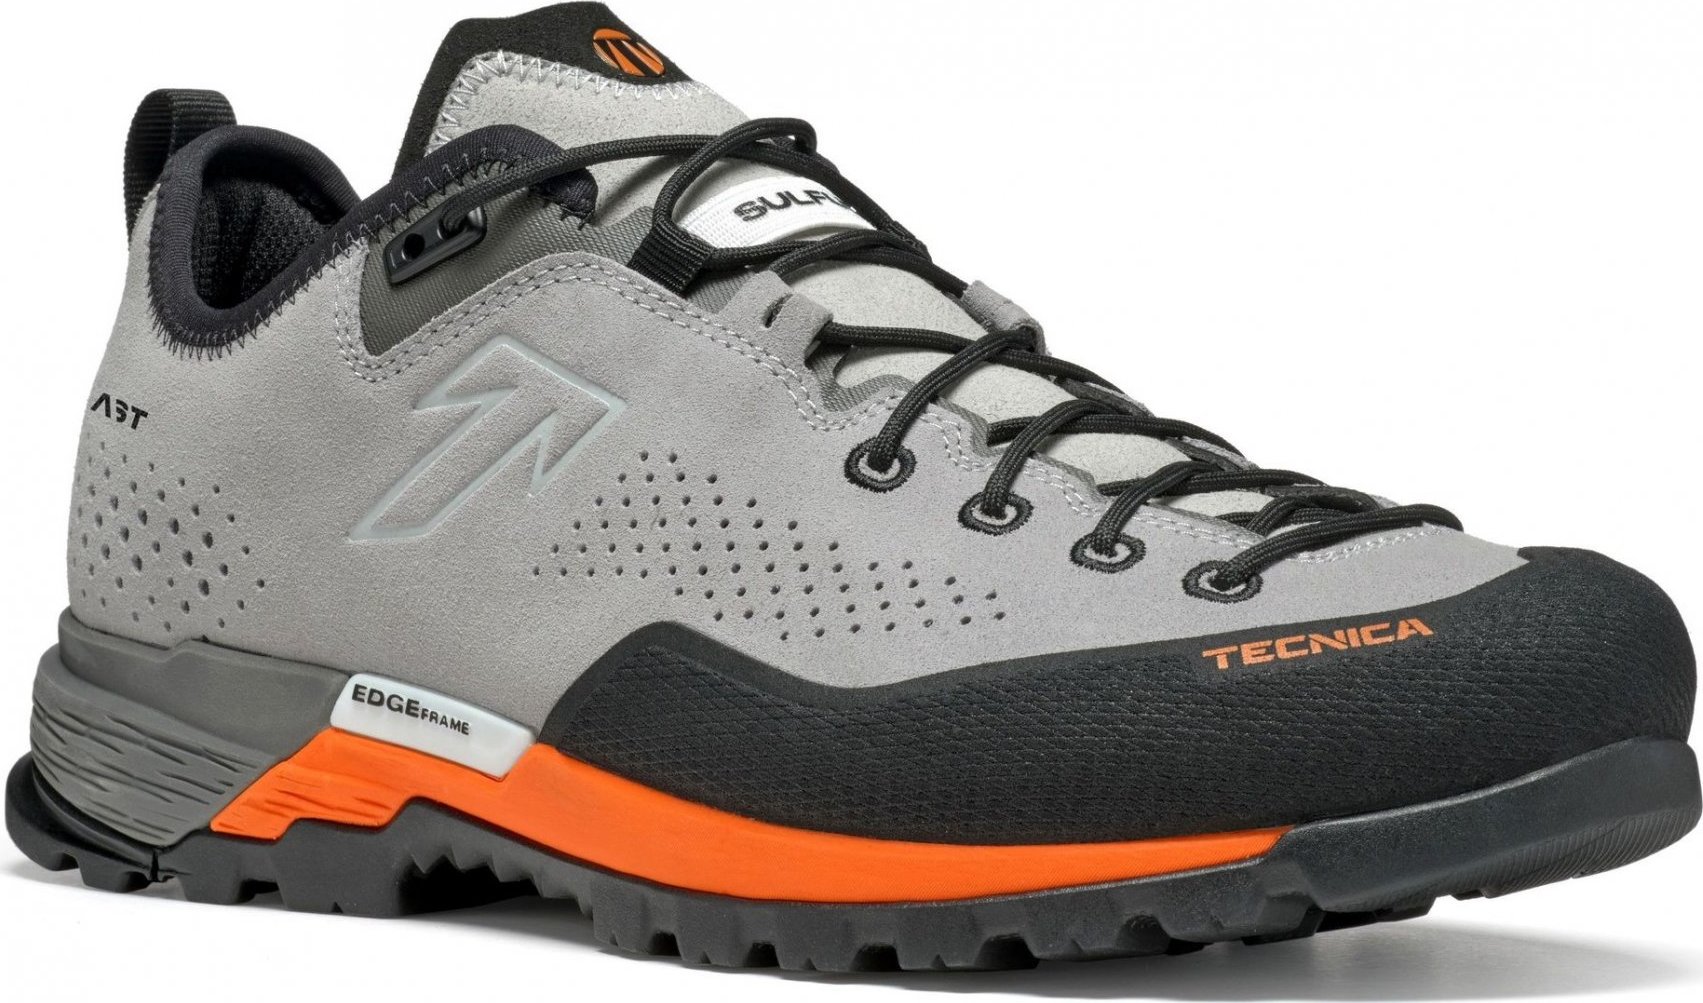 Pánské trekové boty TECNICA Sulfur Ms, 001 soft grey/ultra orange Velikost: 44 1/2